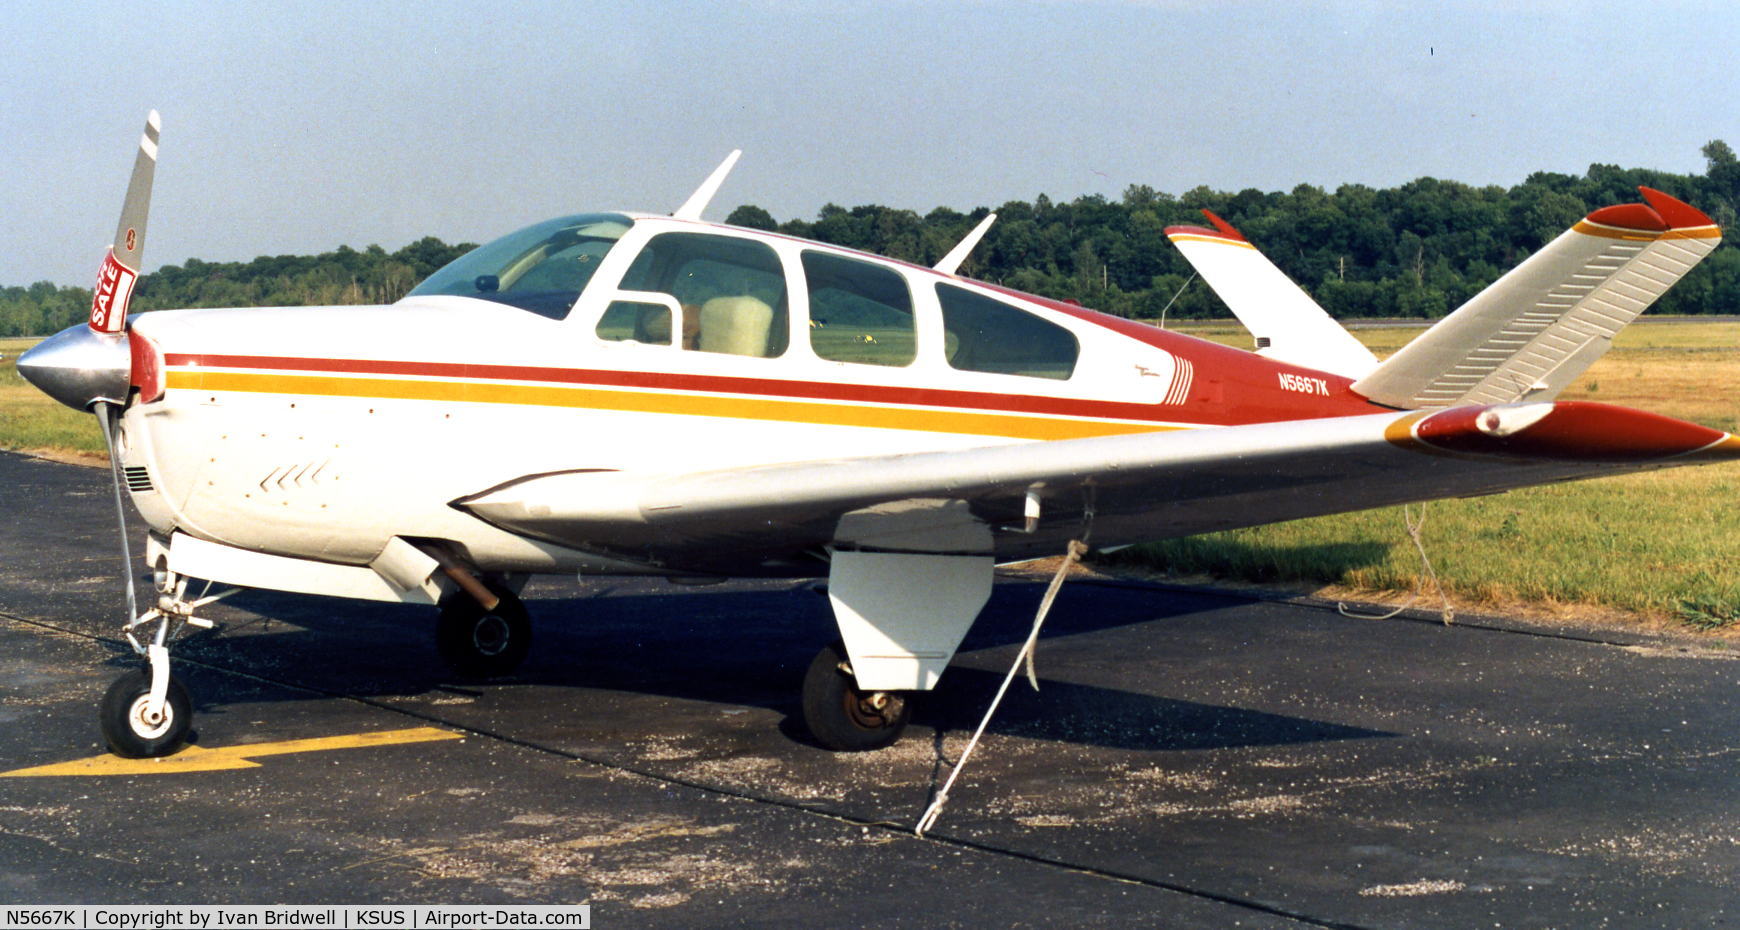 N5667K, 1964 Beech S35 Bonanza C/N D-7598, 1987, prior to sale to final owner.